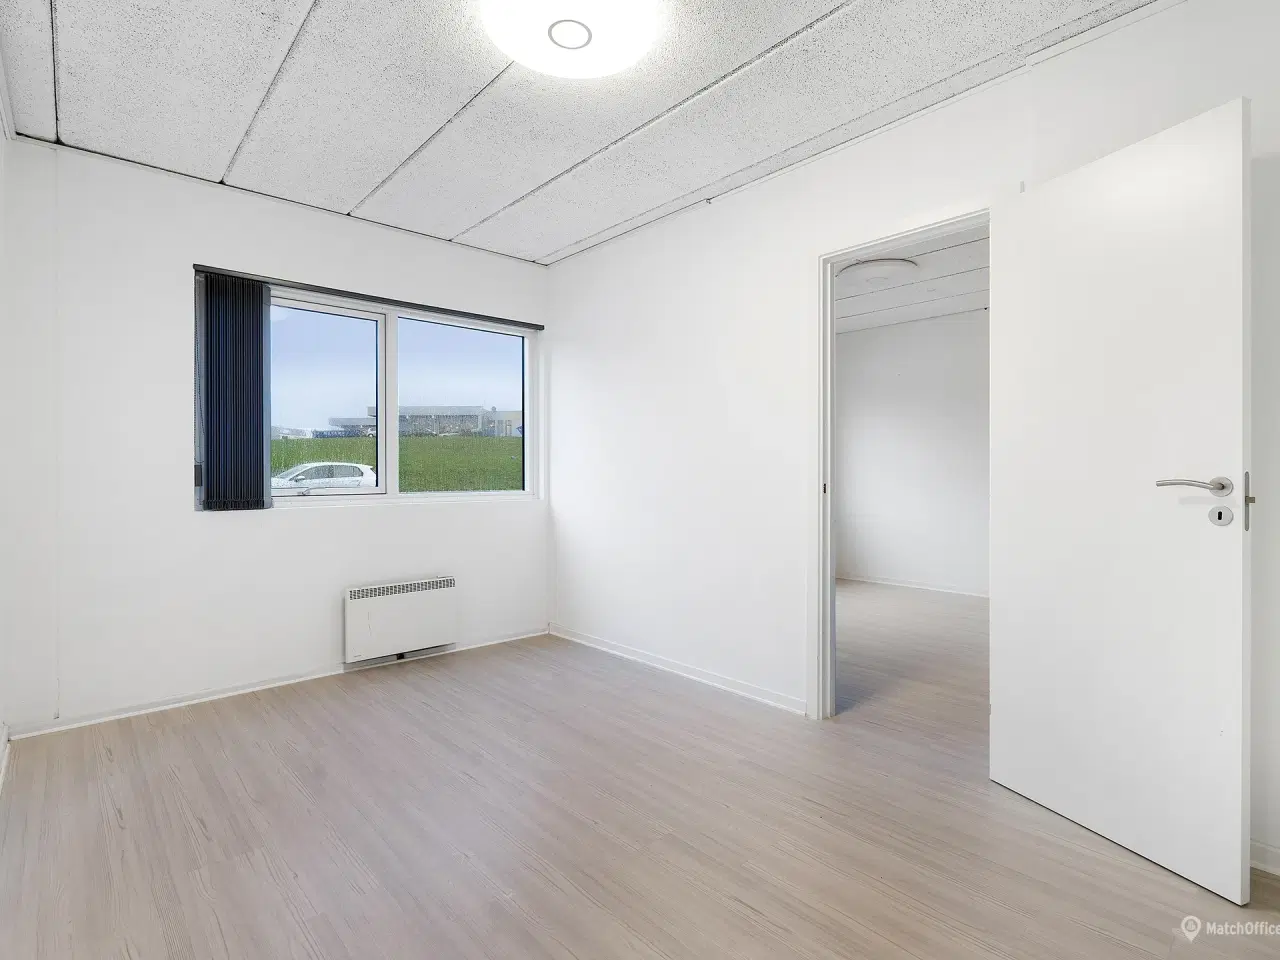 Billede 2 - Kontor på 66 m² i Vejle syd med kort afstand til motorvej E45